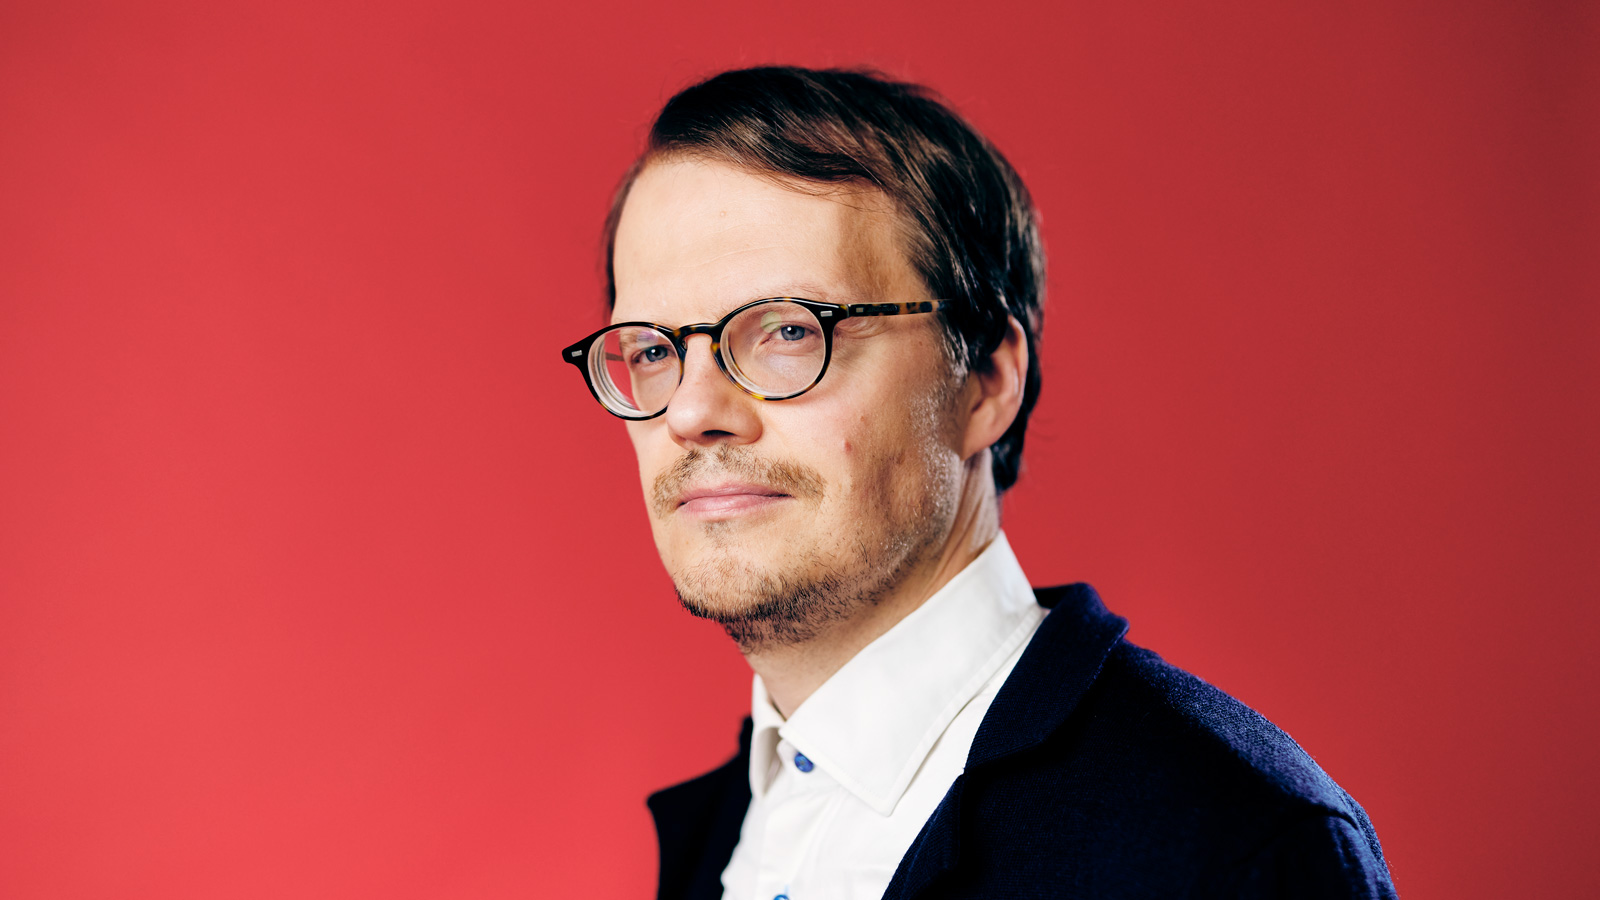 Arkkitehti-lehden päätoimittaja Kristo Vesikansa: ”Ihannetilanteessa rakennuksia ei tarvitsisi purkaa lainkaan"